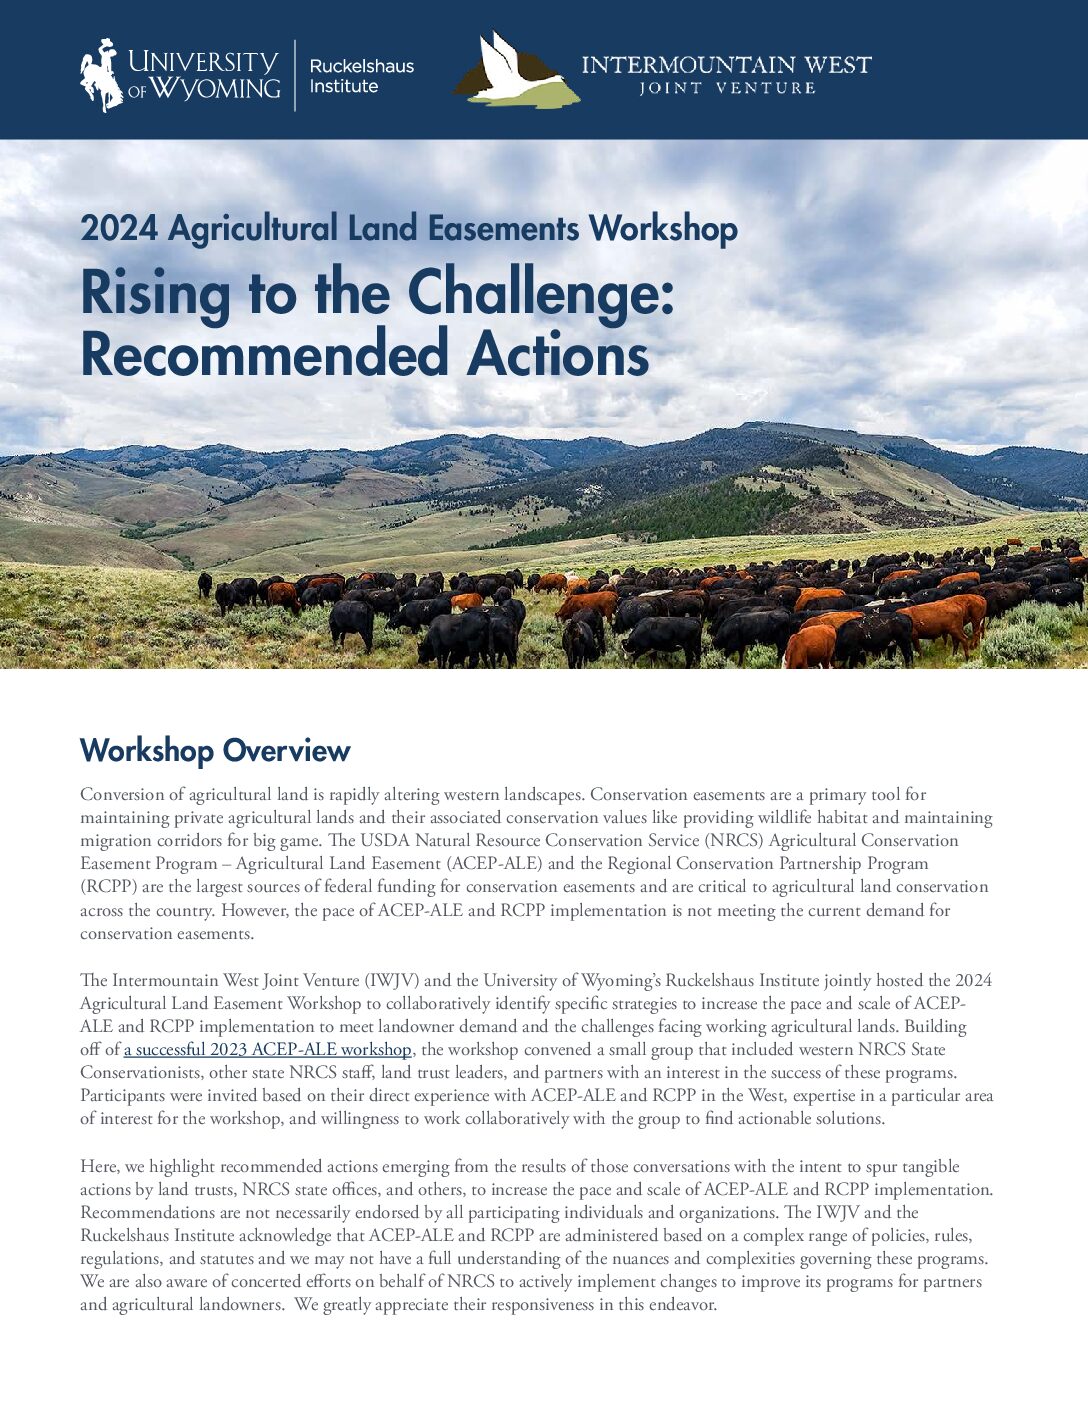 2024 Agricultural Land Easement Workshop Recommendations